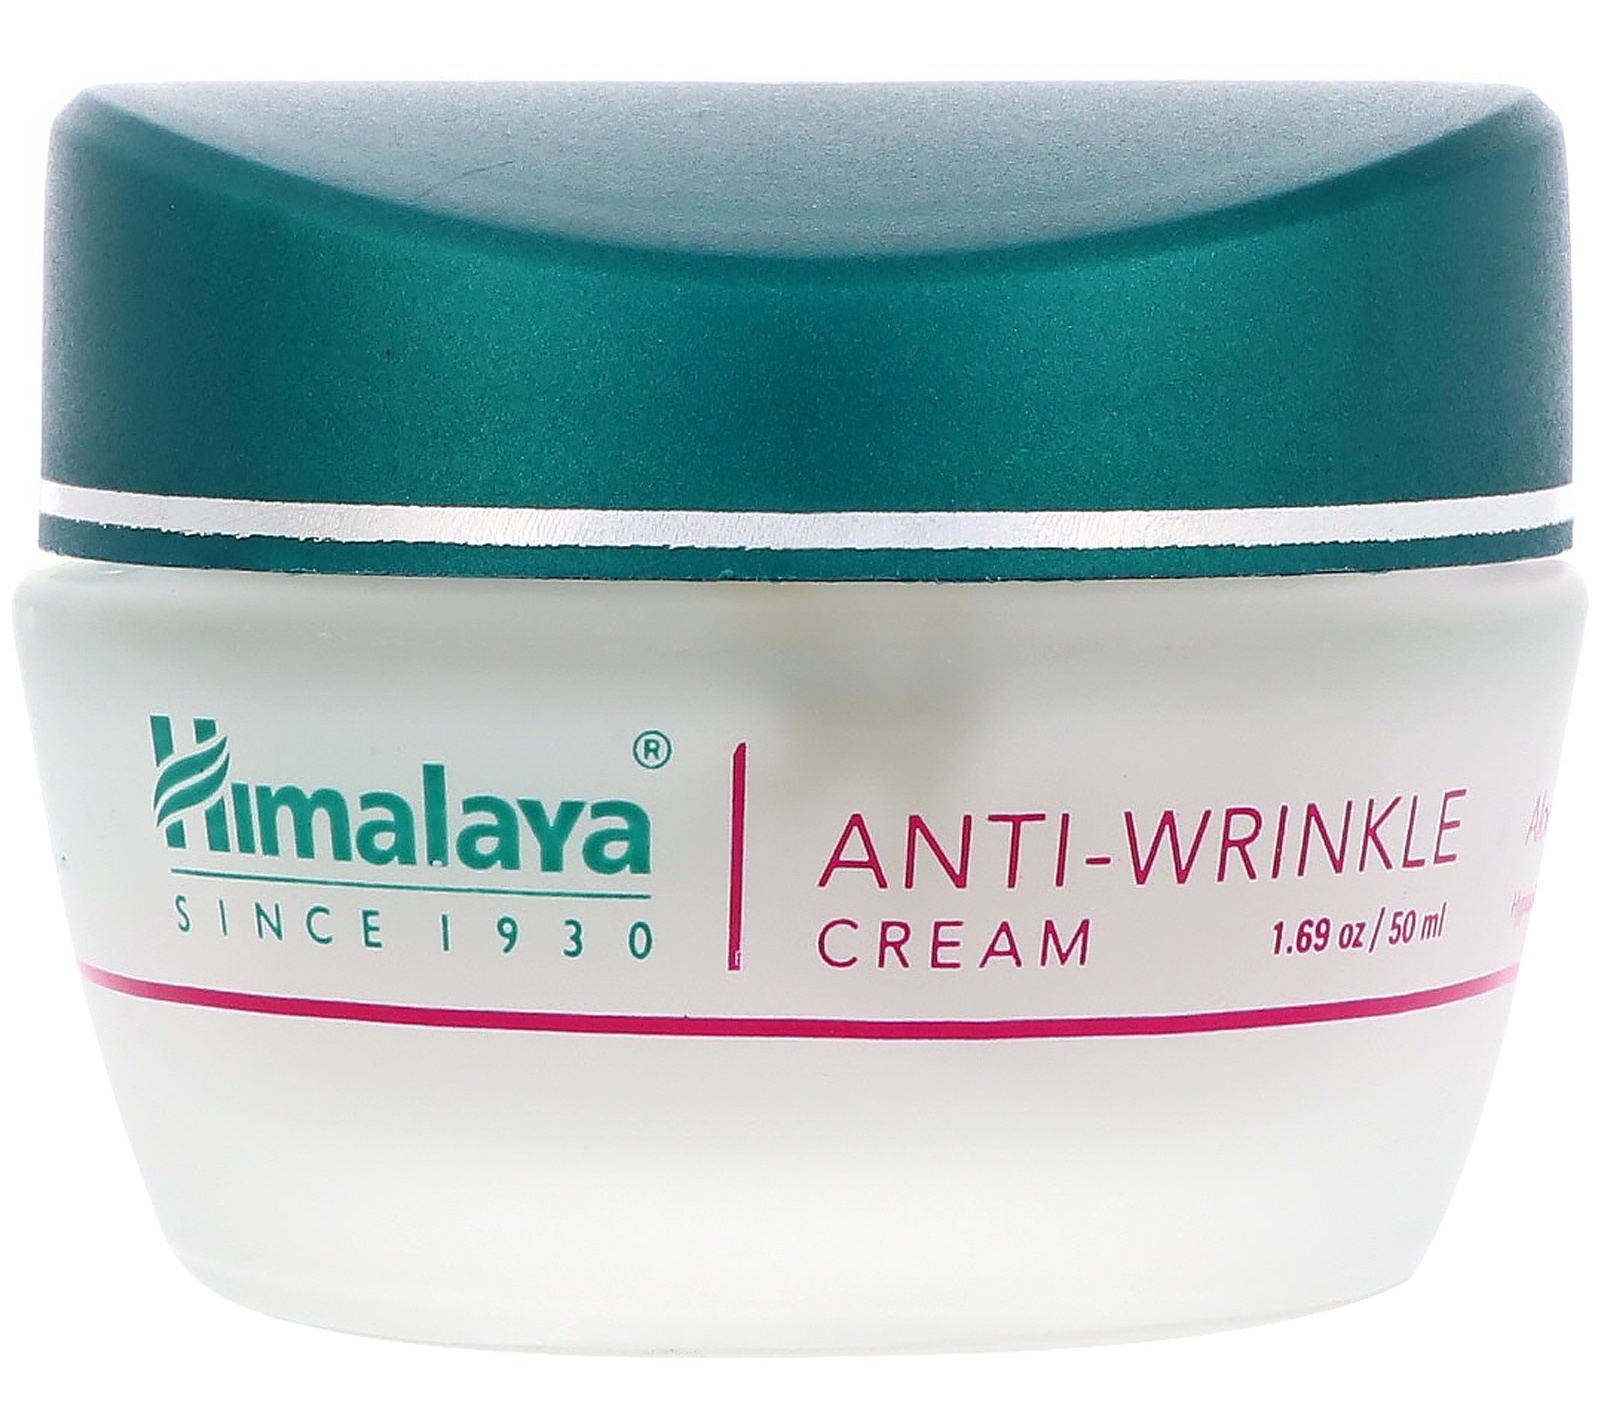 Himalaya Anti Wrinkle Cream Ingredients Explained